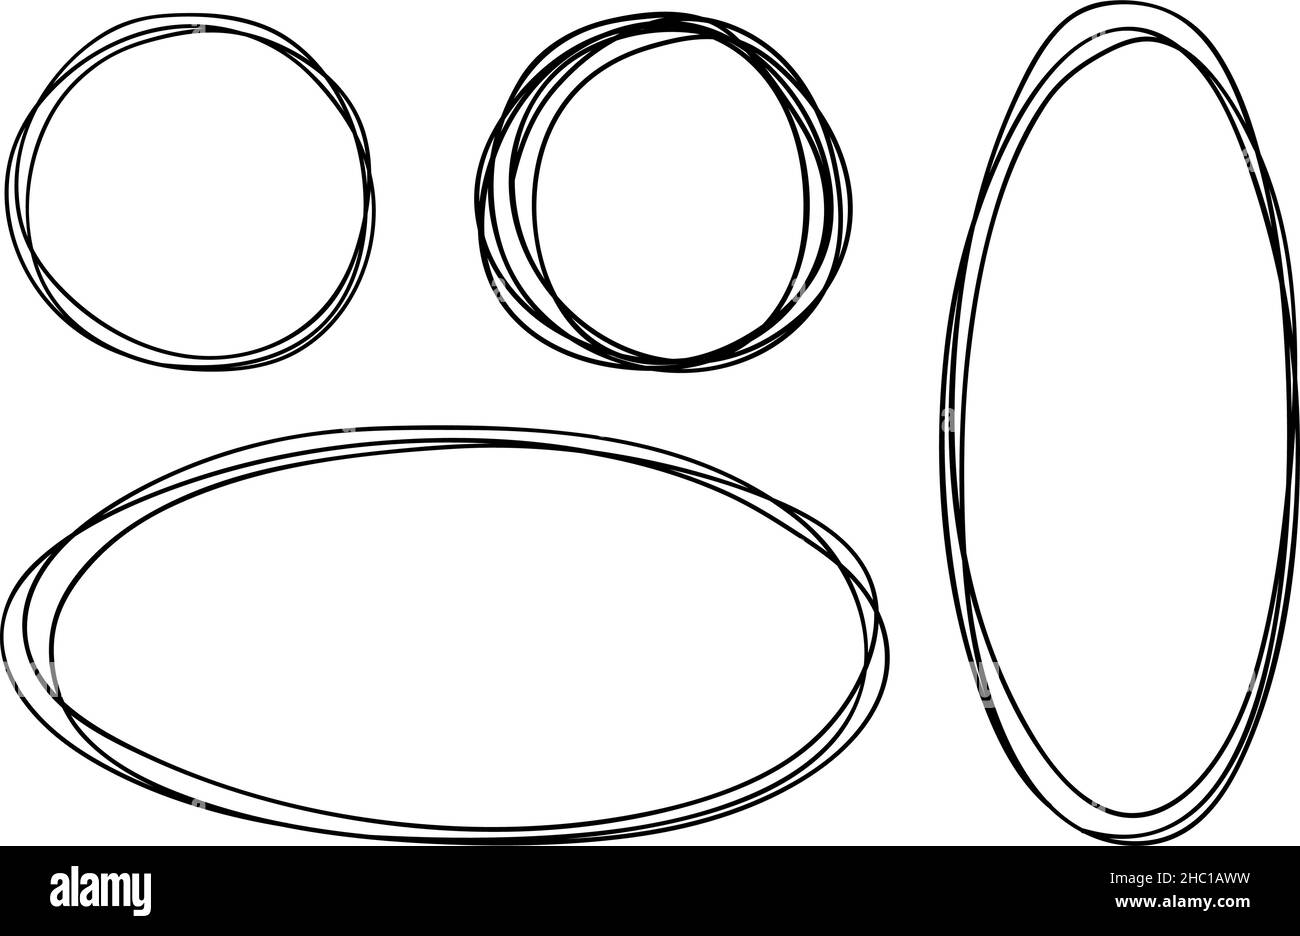 Einfache runde ovale Vektorrahmen im Doodle-Stil. Schwarzer Umriss auf weißem Hintergrund mit leerem Abstand in den mittleren Abbildungen. Zur Dekoration von Karten, Einladungen. Stock Vektor